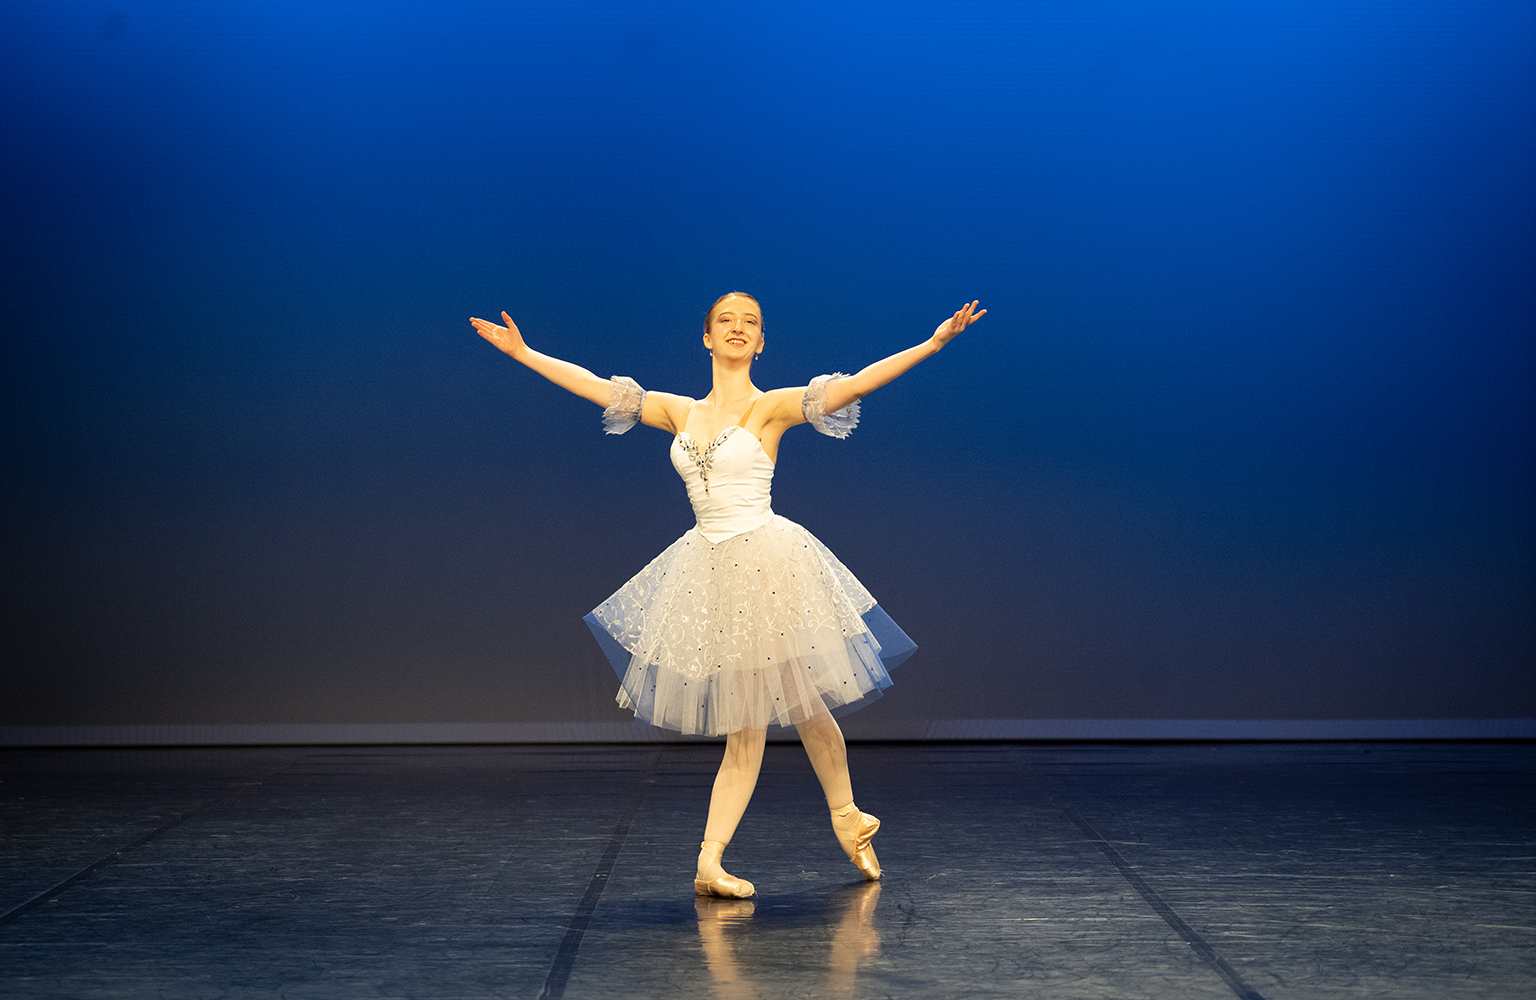 Avgang 2020: Bachelor klassisk ballett: Sommerforestilling - Oslo